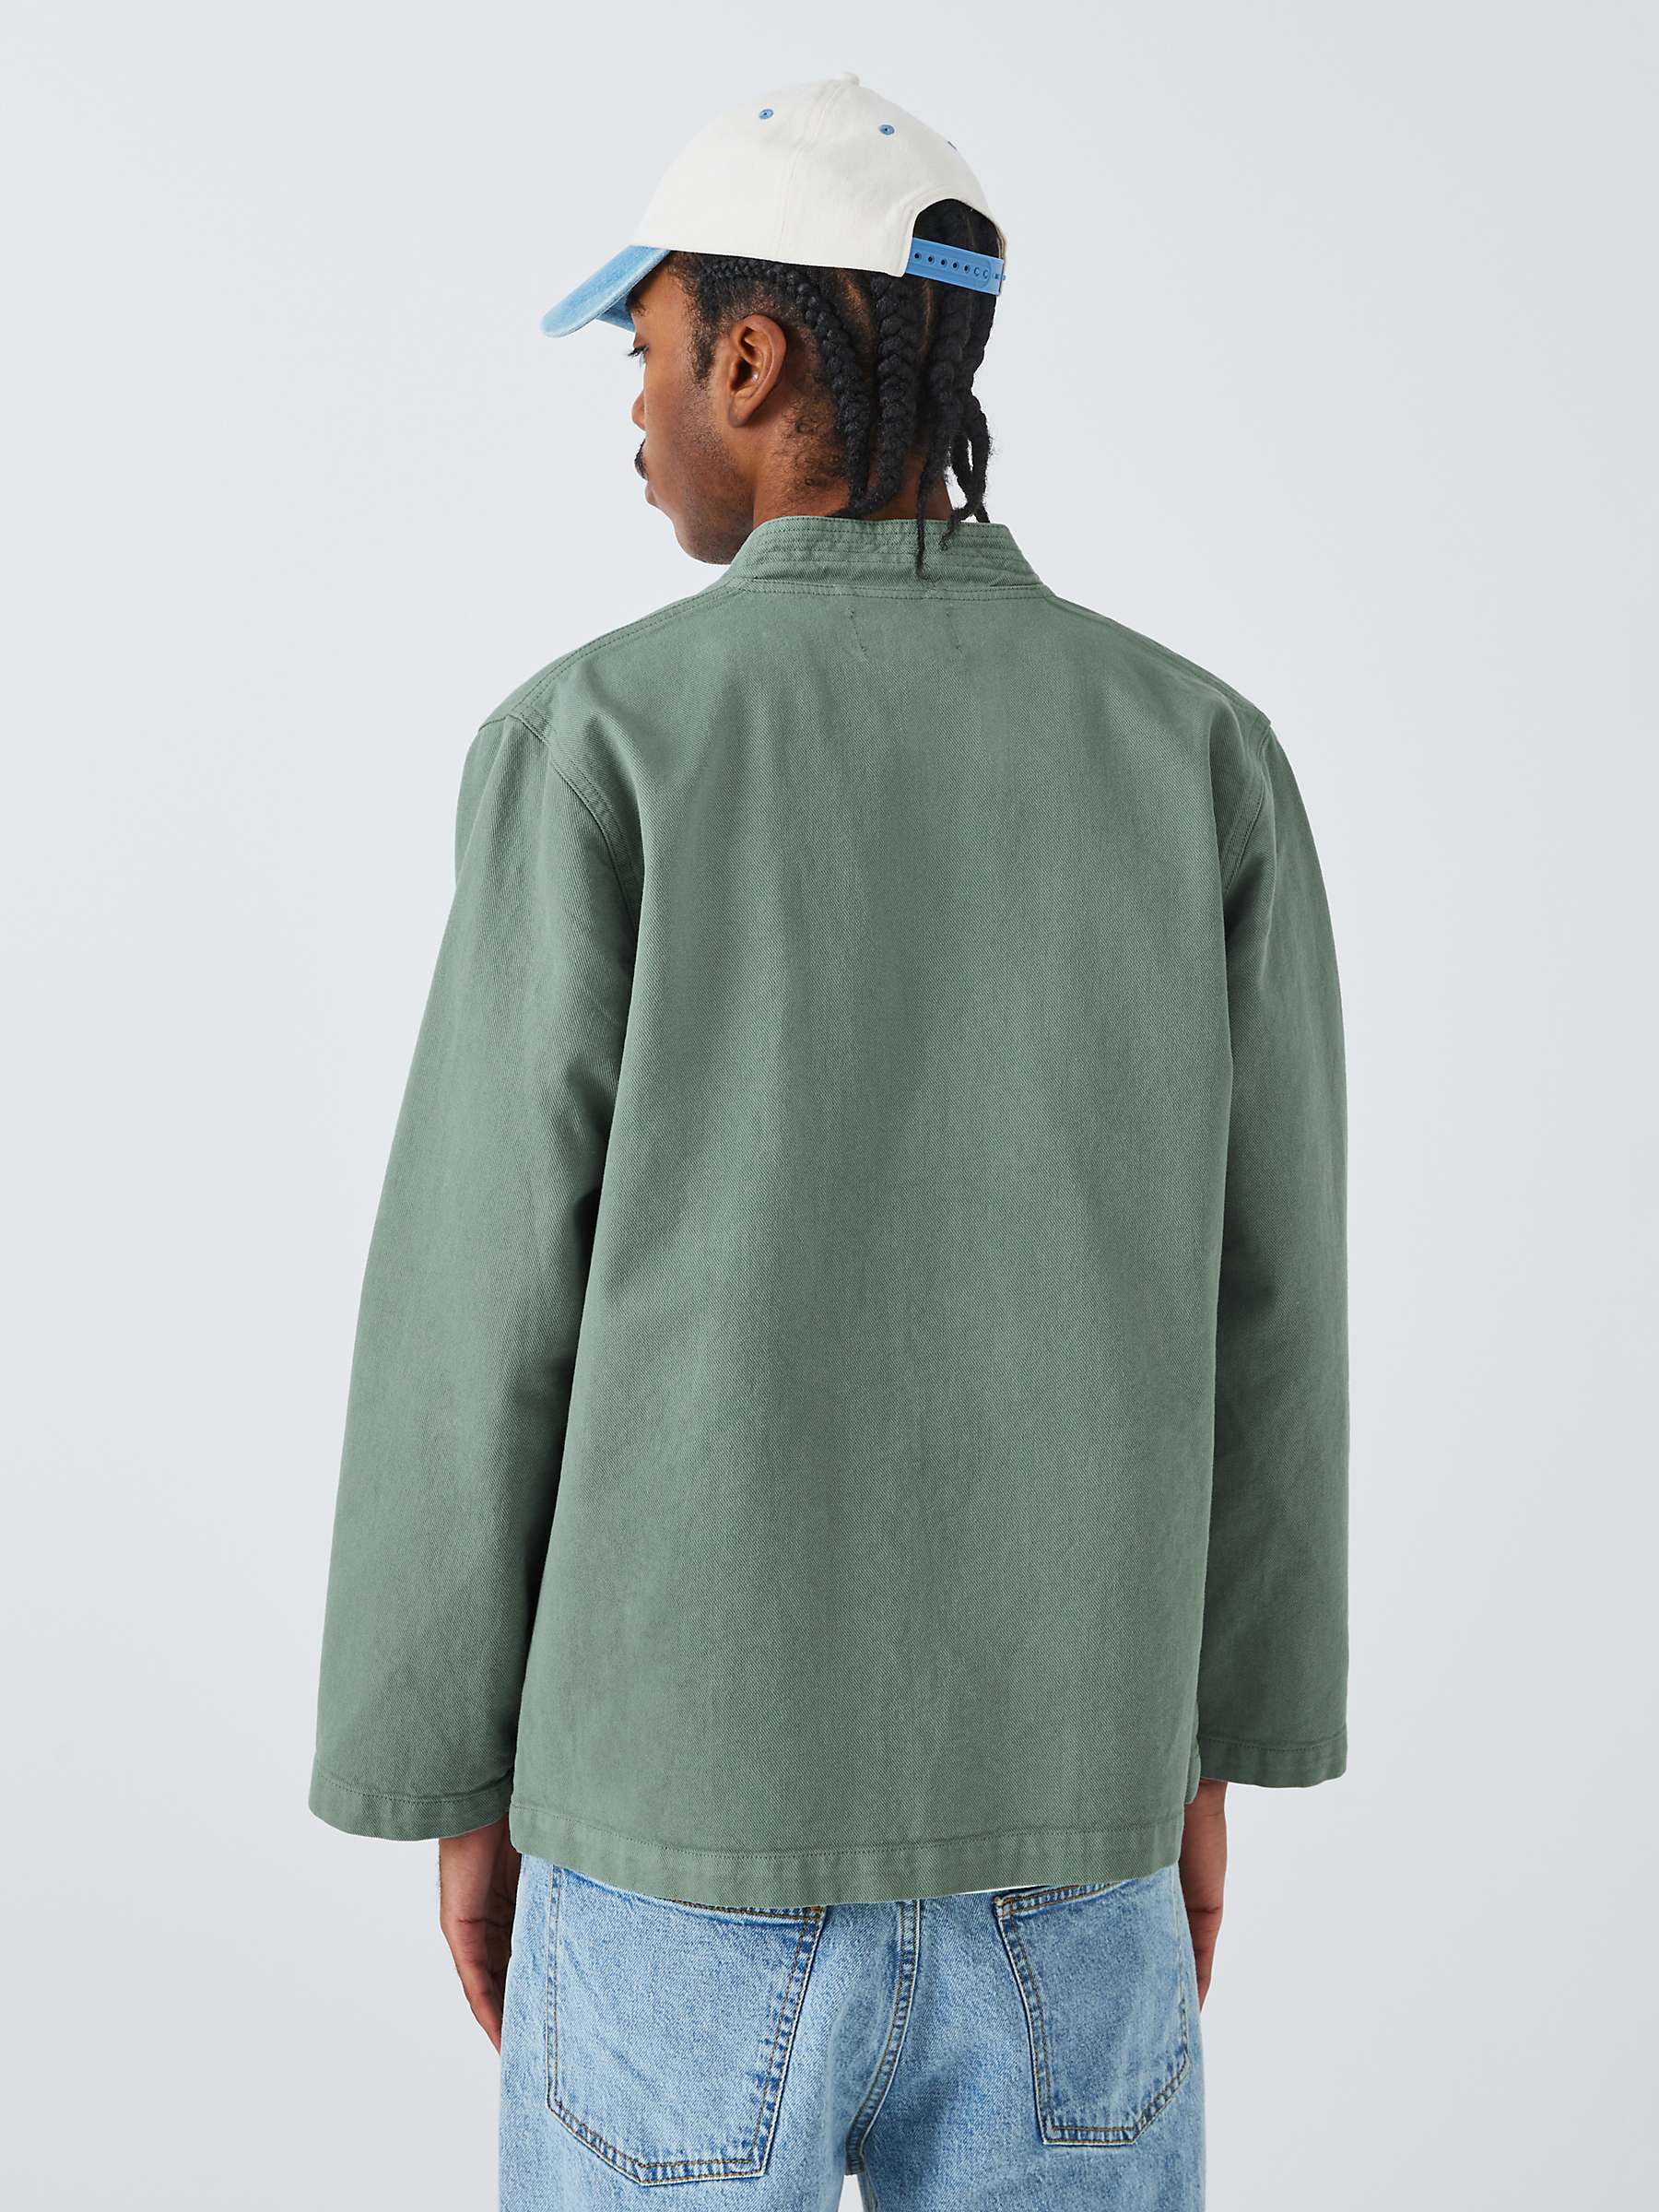 Buy La Paz Cotton V-Neck Worker Jacket, Green Bay Canvas Online at johnlewis.com